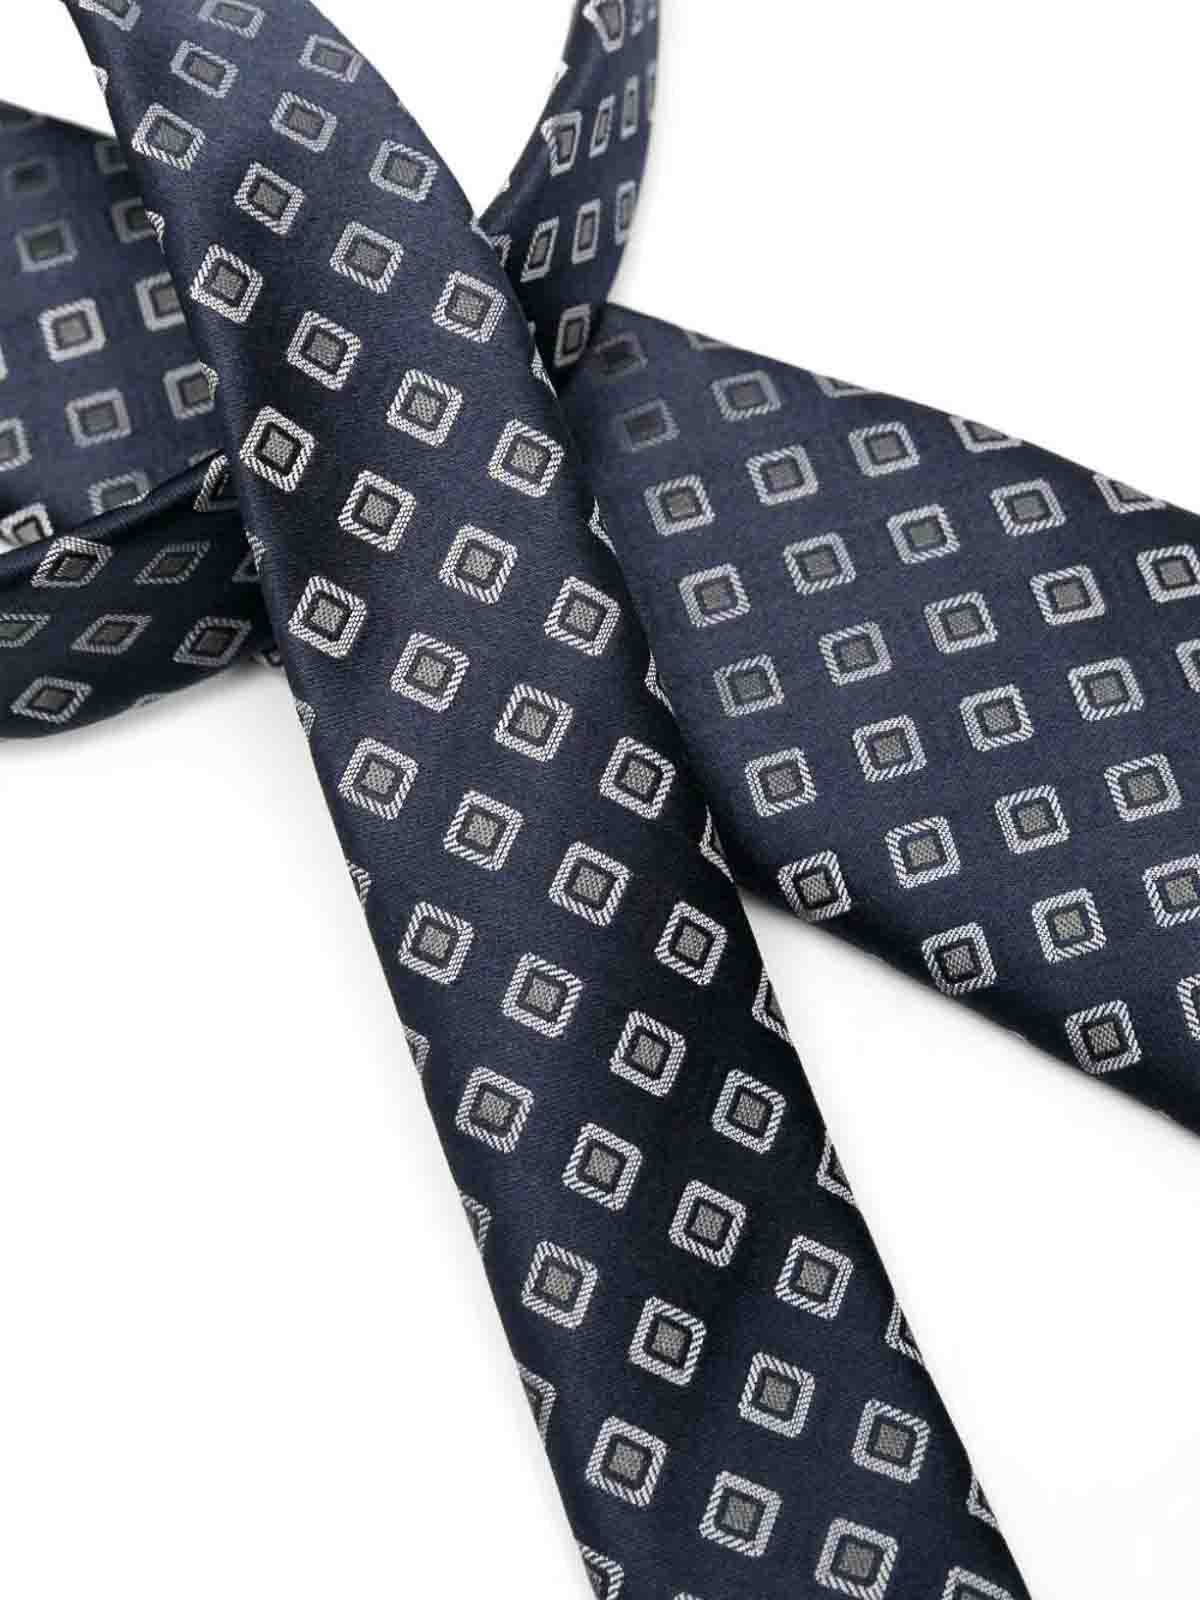 Shop Giorgio Armani Tie In Multicolour